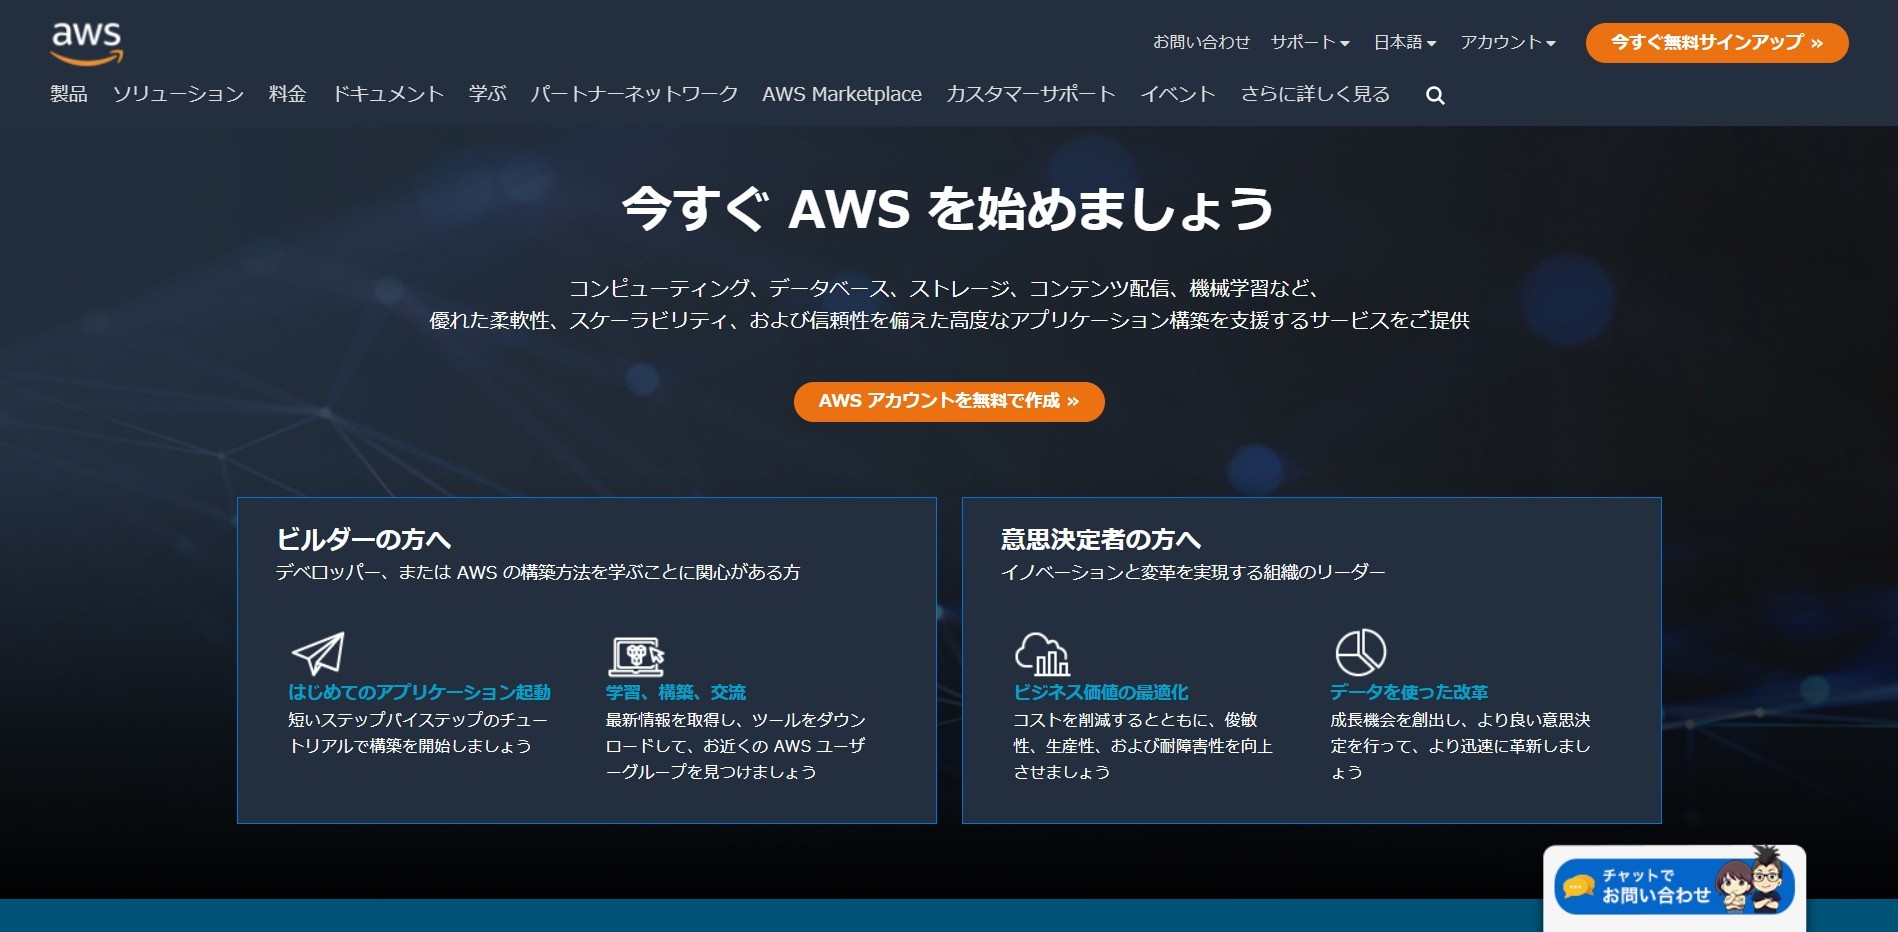 アマゾン ウェブ サービス ジャパン 合同会社のクラウドシステム開発